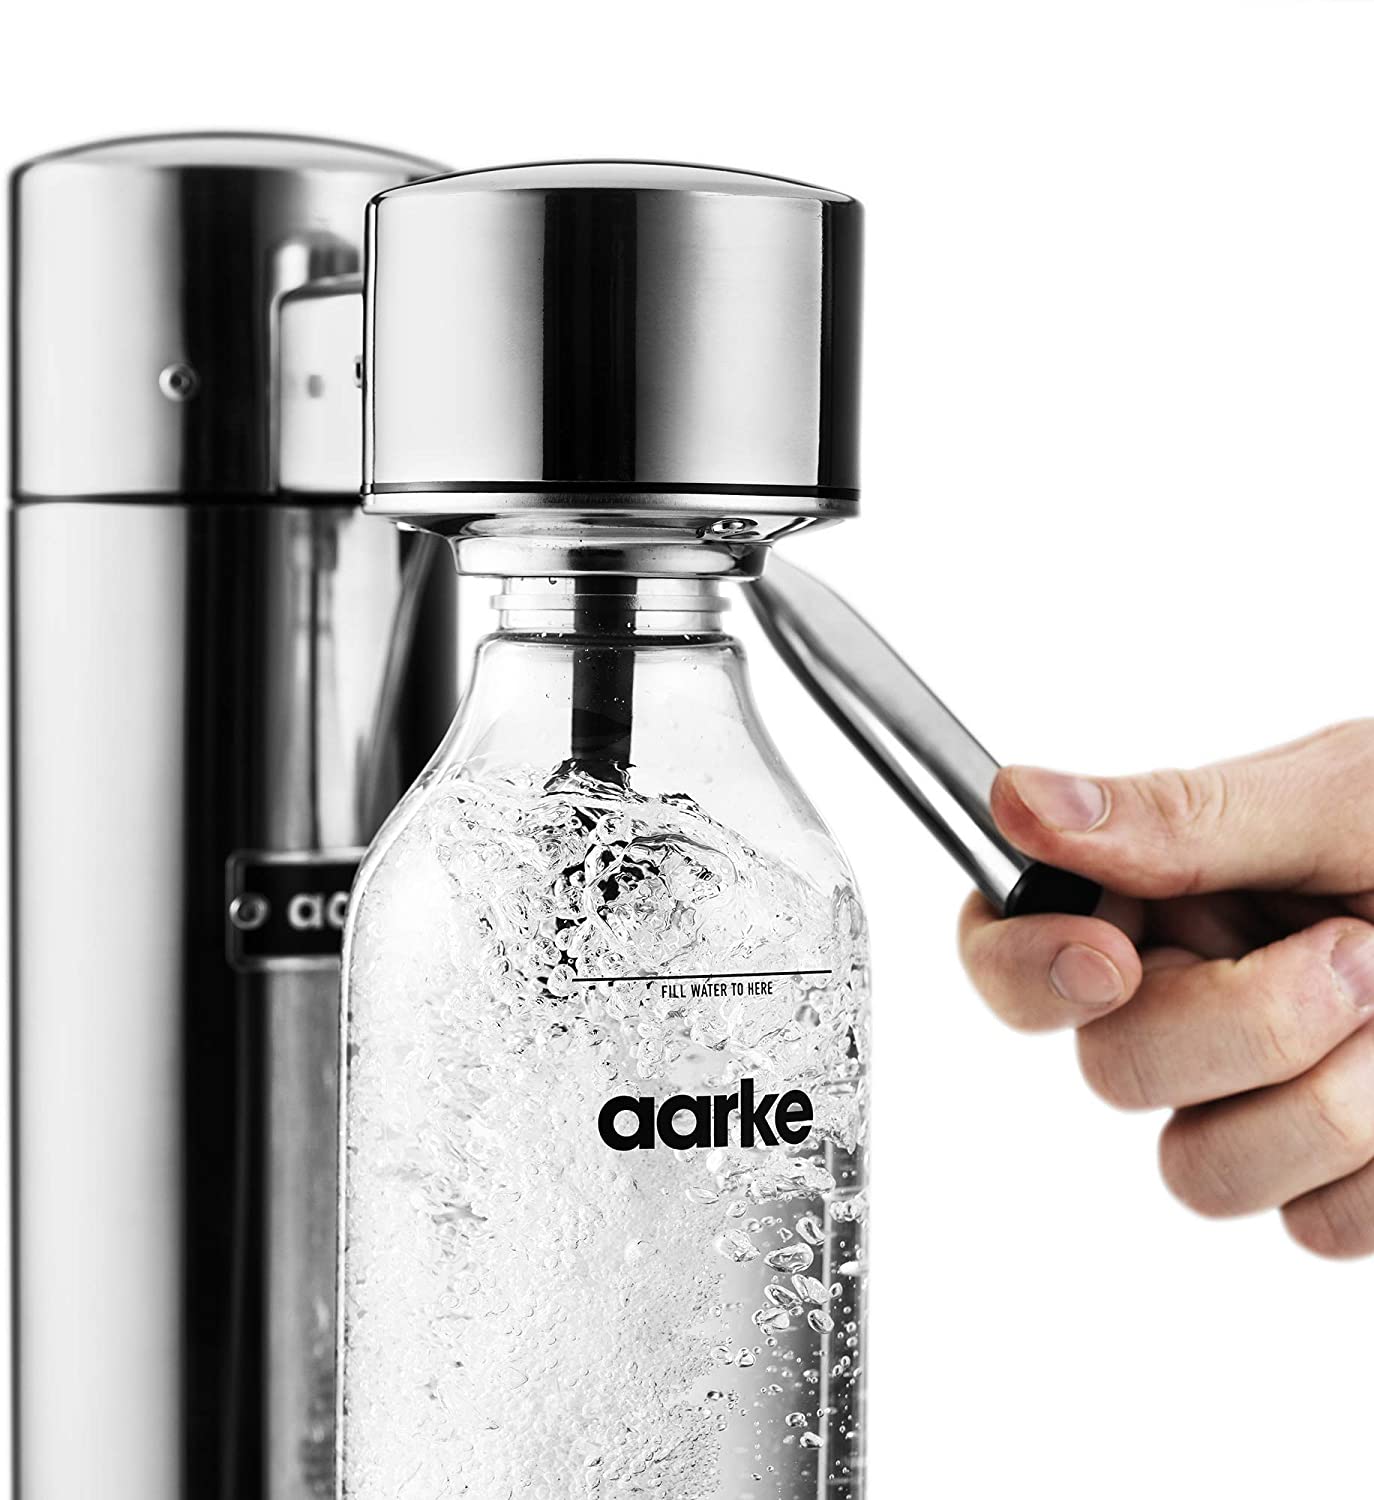 Aarke Carbonator II – Chop and Taste